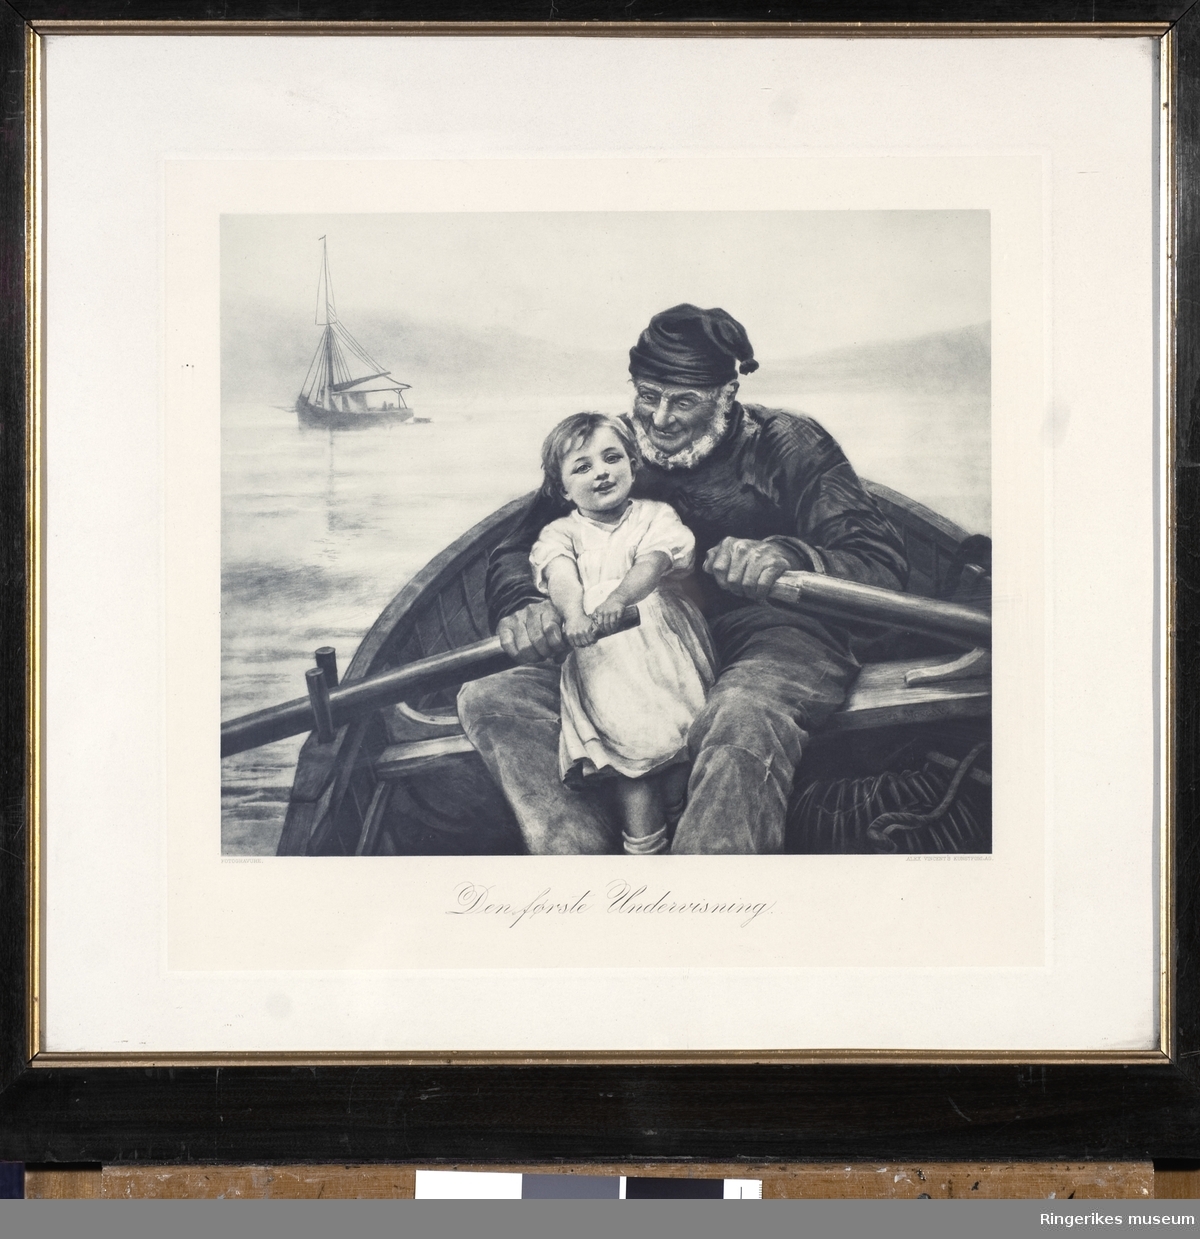 Bildet er et trykk i svart/hvit av en eldre mann som ror på havet sammen med en liten pike. Bildet har tittelen Den første undervisning. Det er signert Fred Morgan. Utgitt på Alex Vincent's kunstforlag. Bildet er i glass og ramme og yttermålene er 55 X 51 cm.